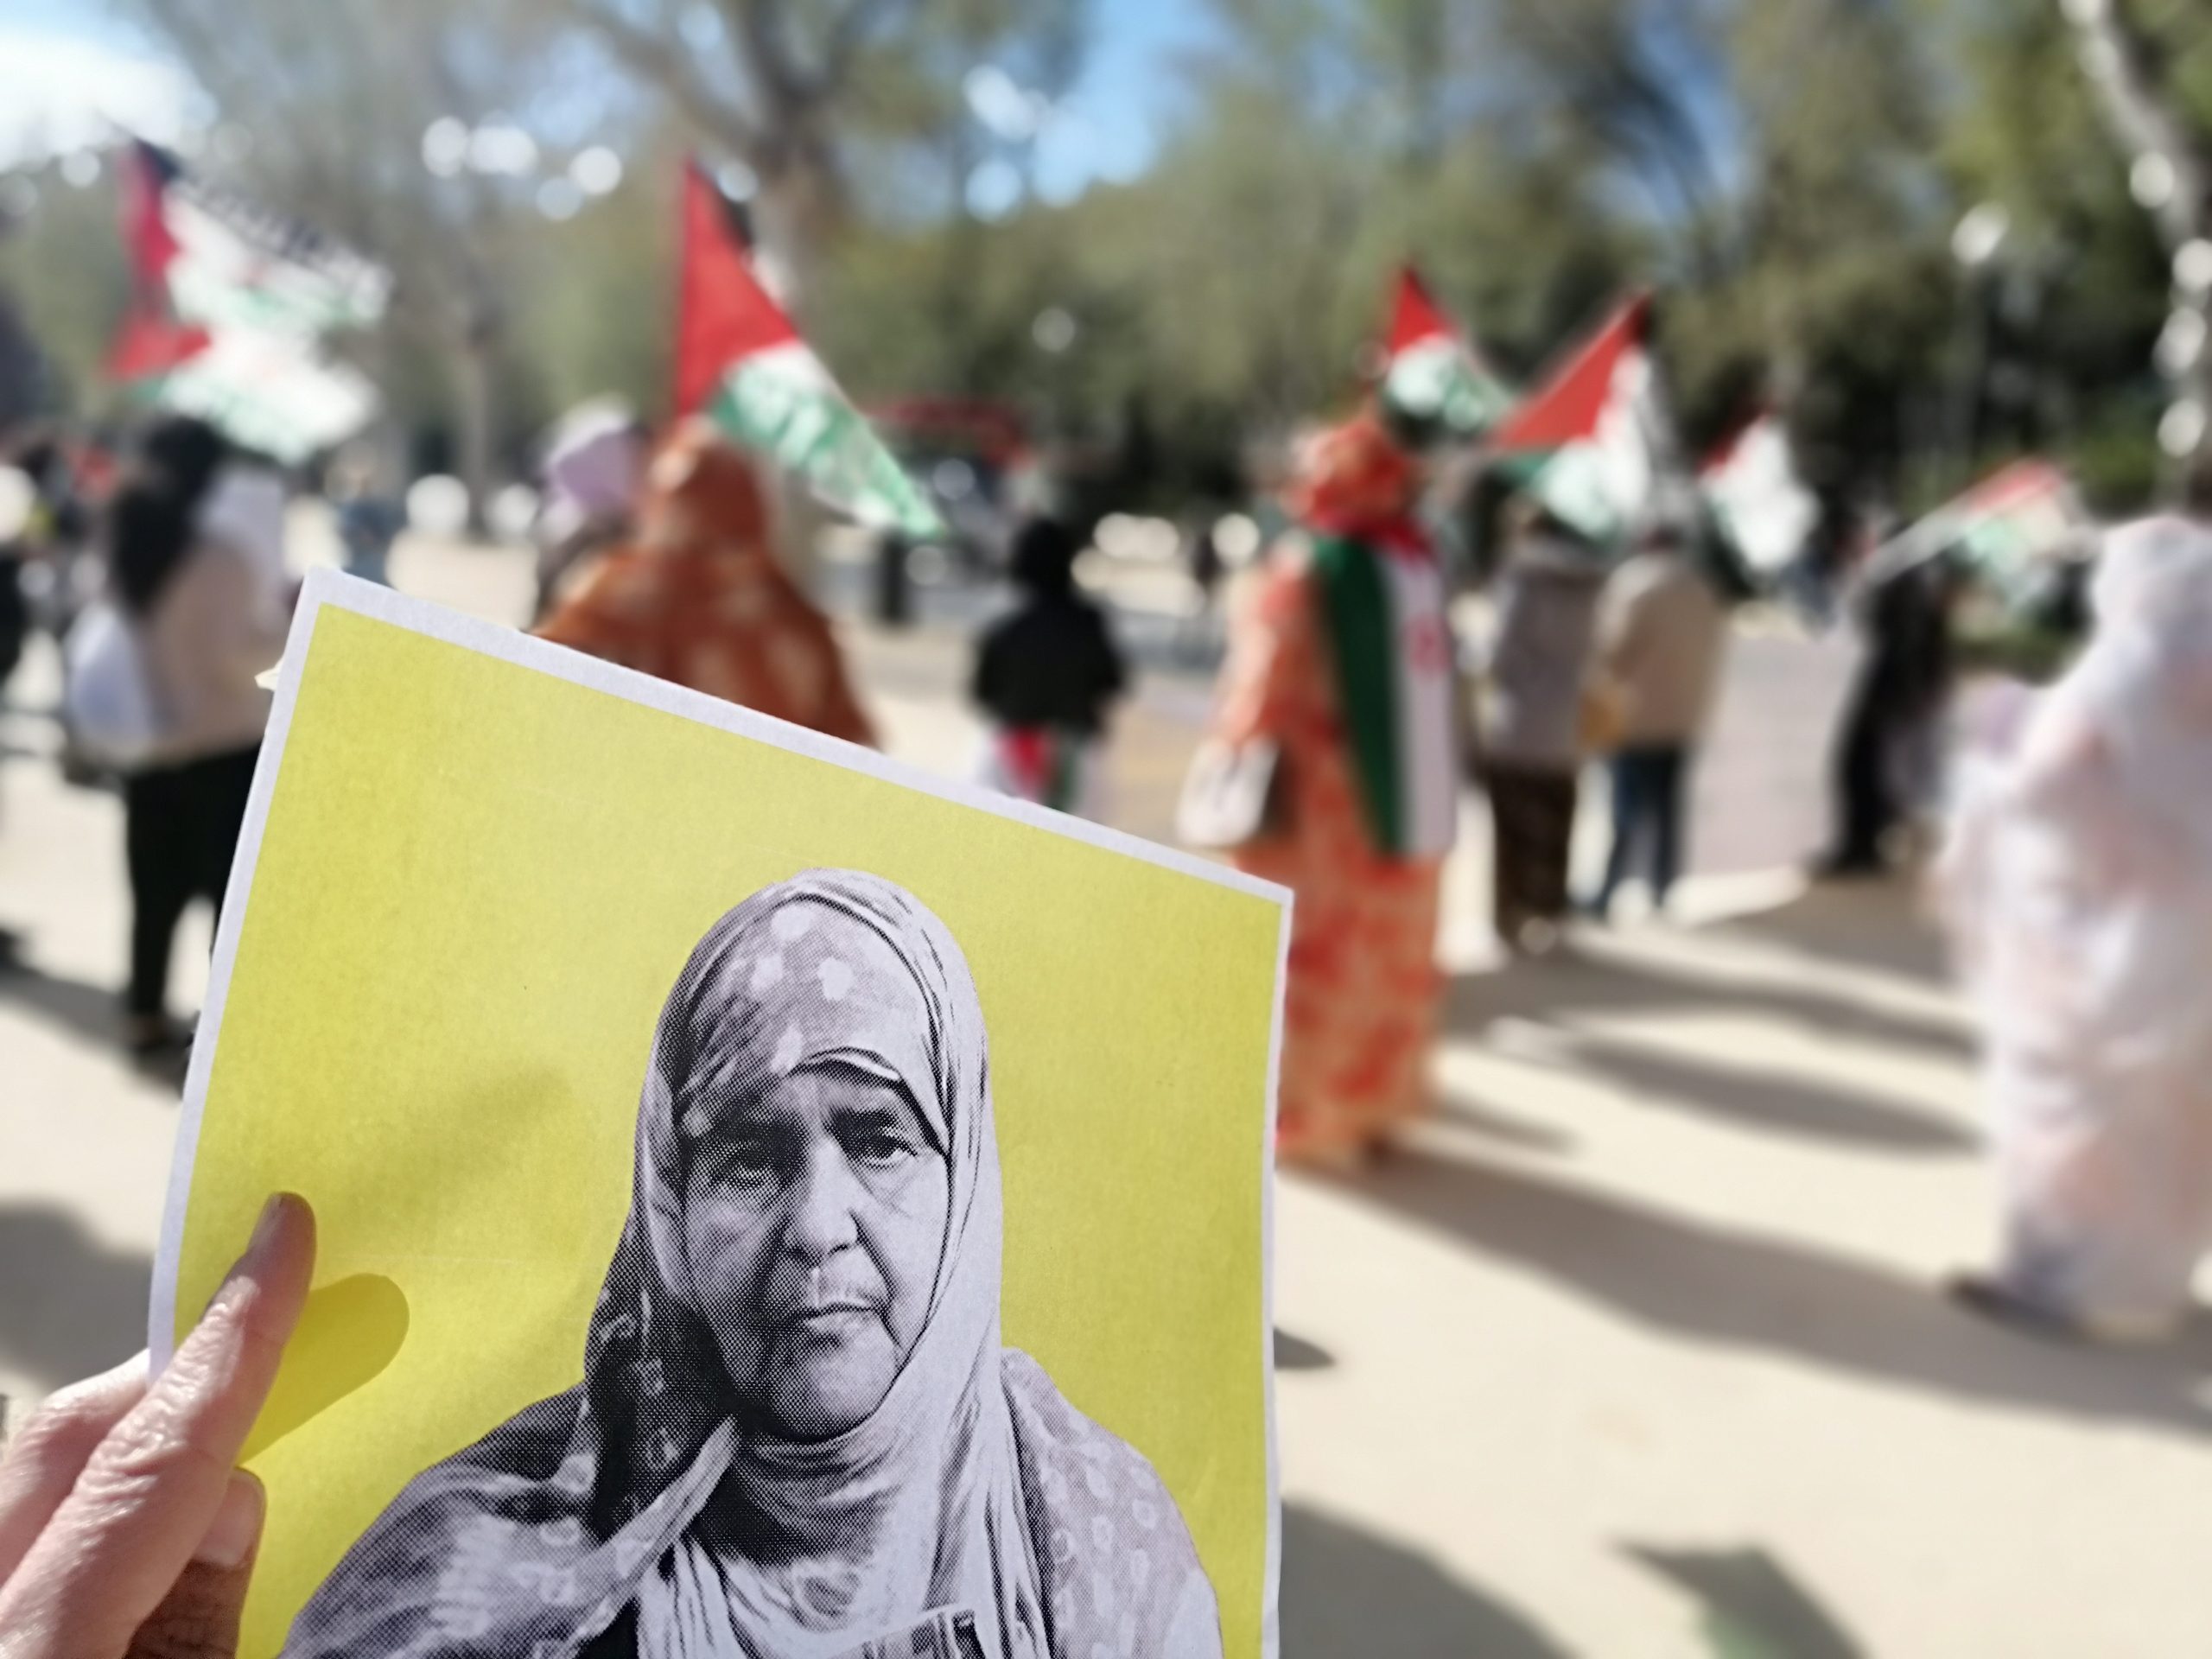 Denuncian la situación del periodista saharaui encarcelado en Tiflet y la venta de un buque de guerra a la Marina Real de Marruecos – CEAS-Sahara